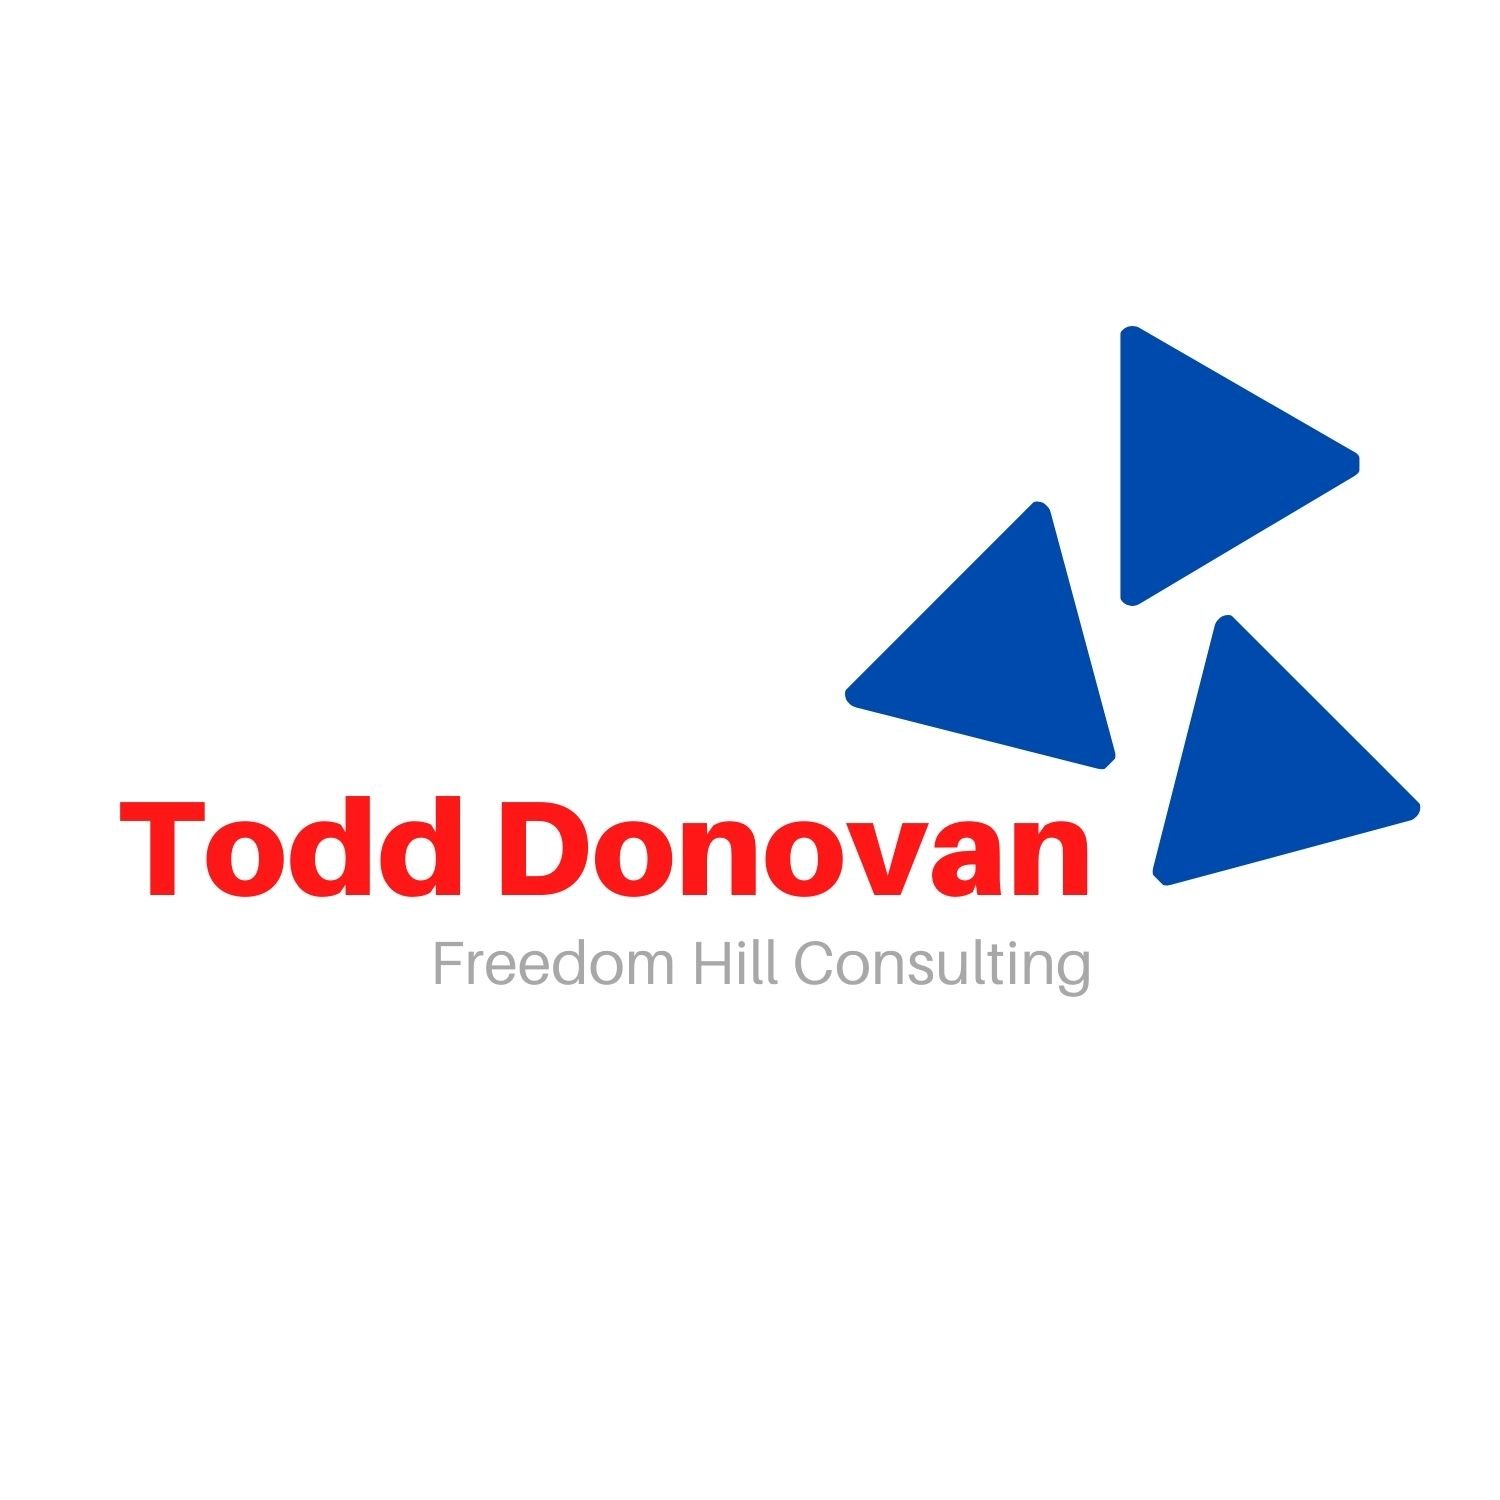 Todd Donovan